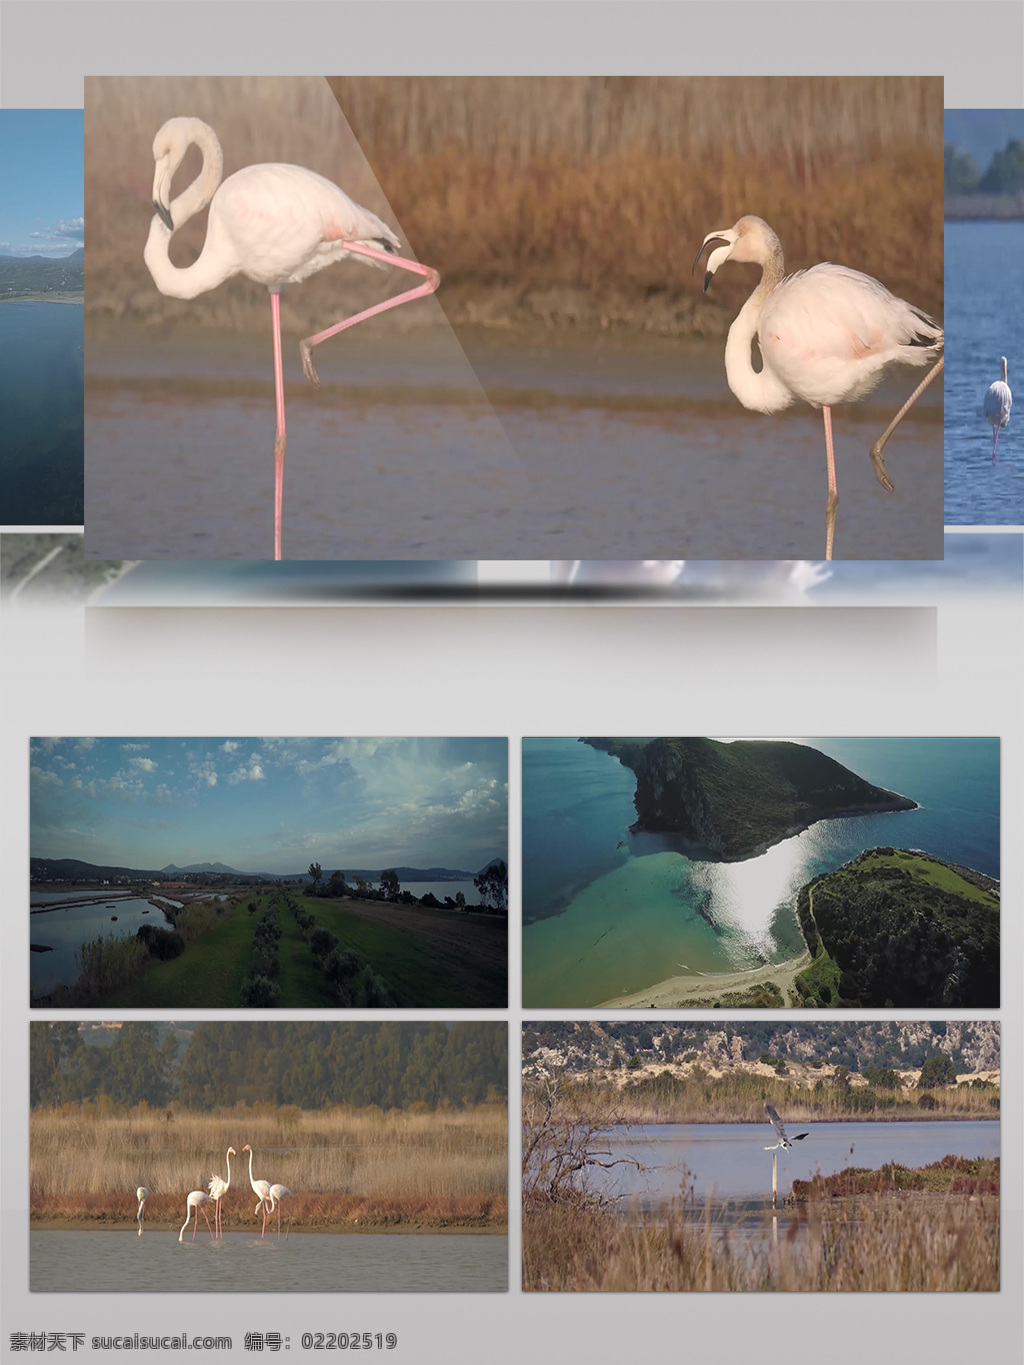 4k 希腊 吉 亚诺 袜 旅游 人文 风光 自然景观 展示 自然 景观 动物 吉亚诺袜 稀有鸟类 湿地 风情